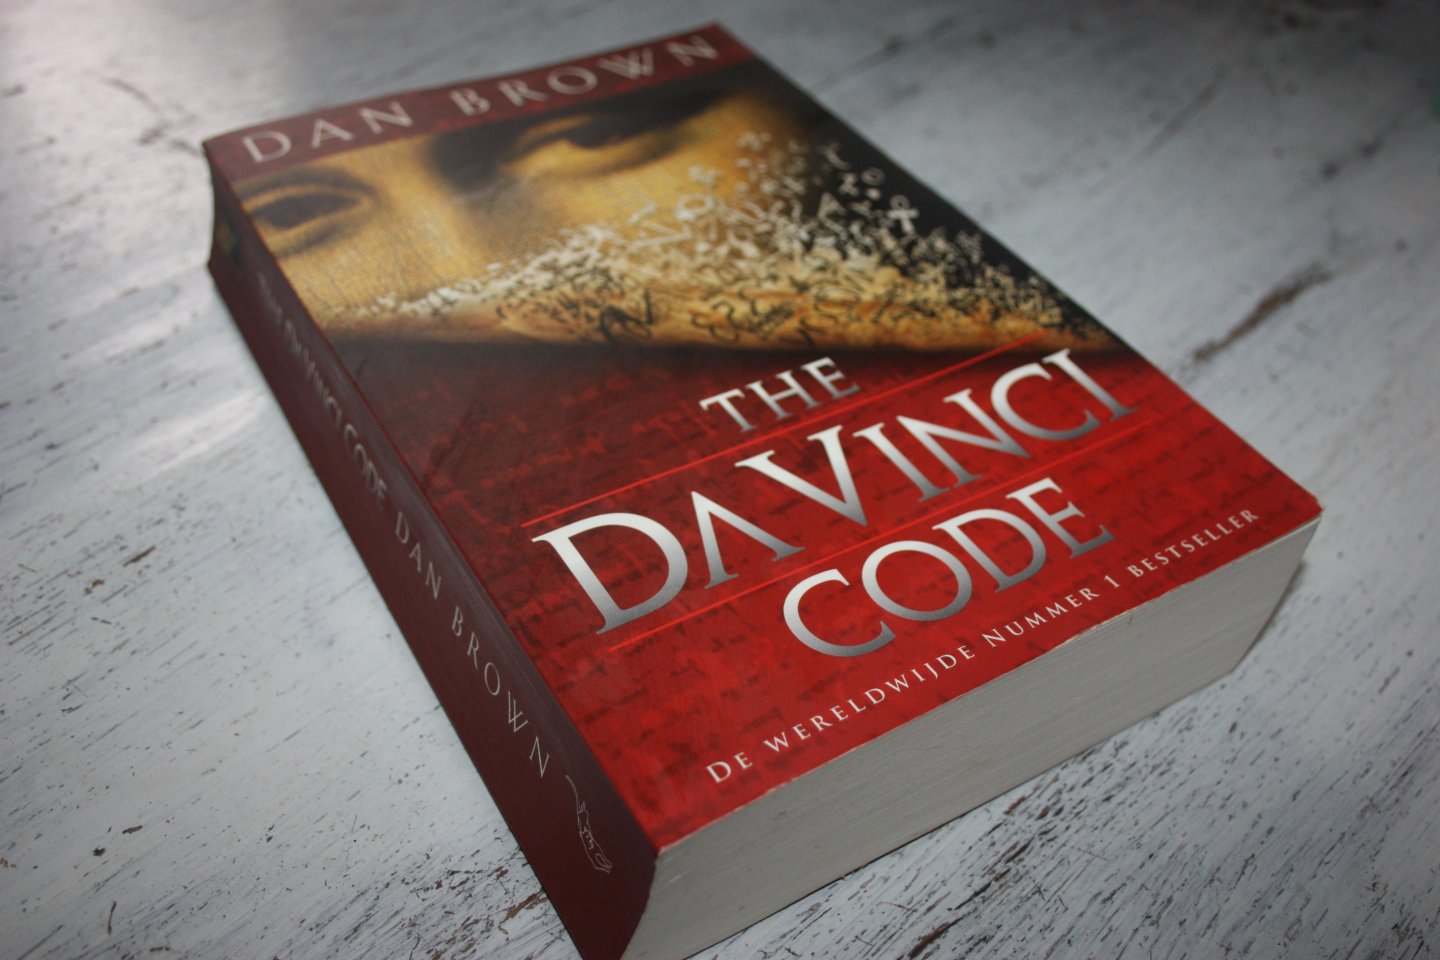 Brown, Dan - Da Vinci Code, The